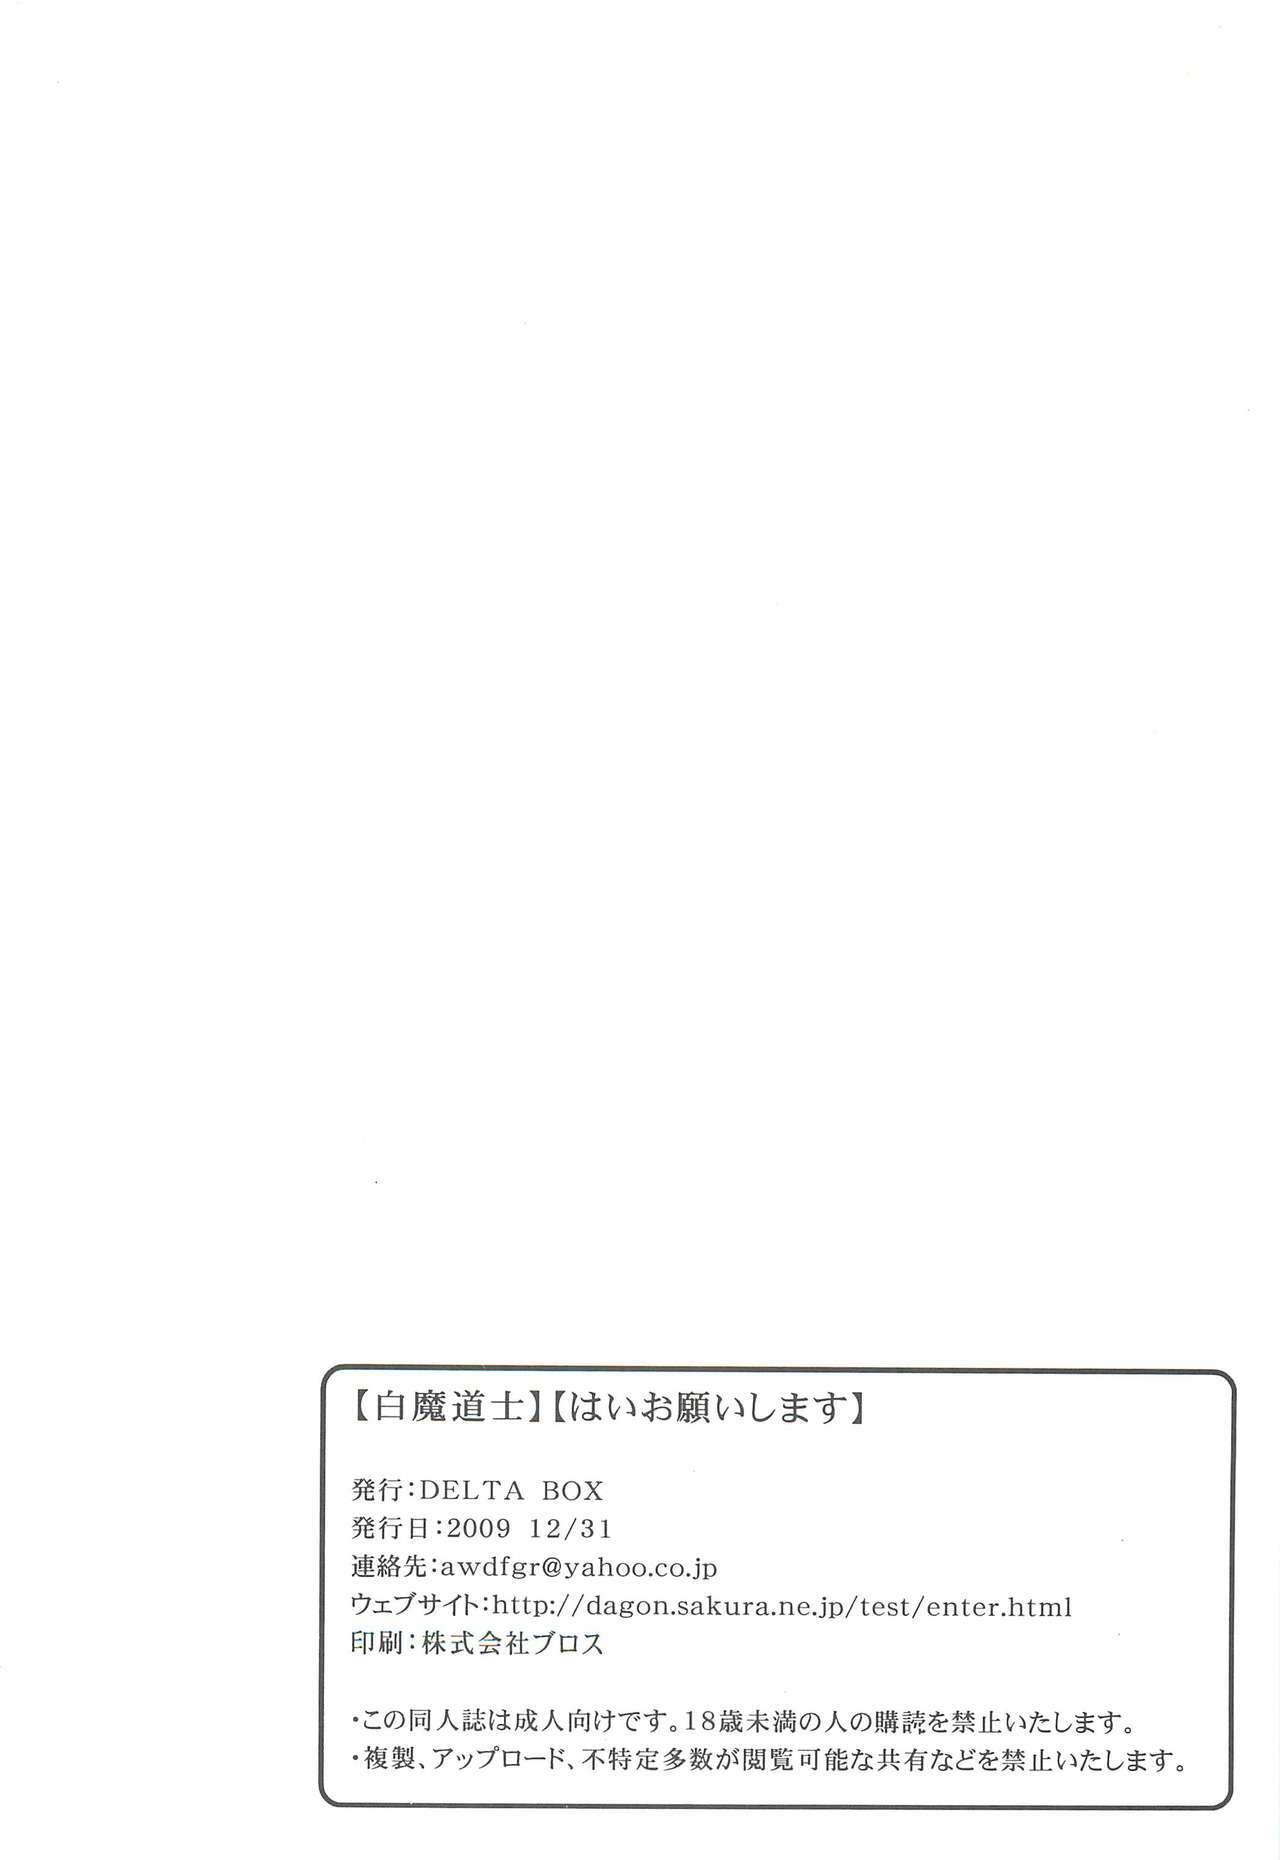 [DELTA BOX (Ishida Masayuki)] Shiromadoushi Hi Onegaishimasu (Final Fantasy I) page 26 full